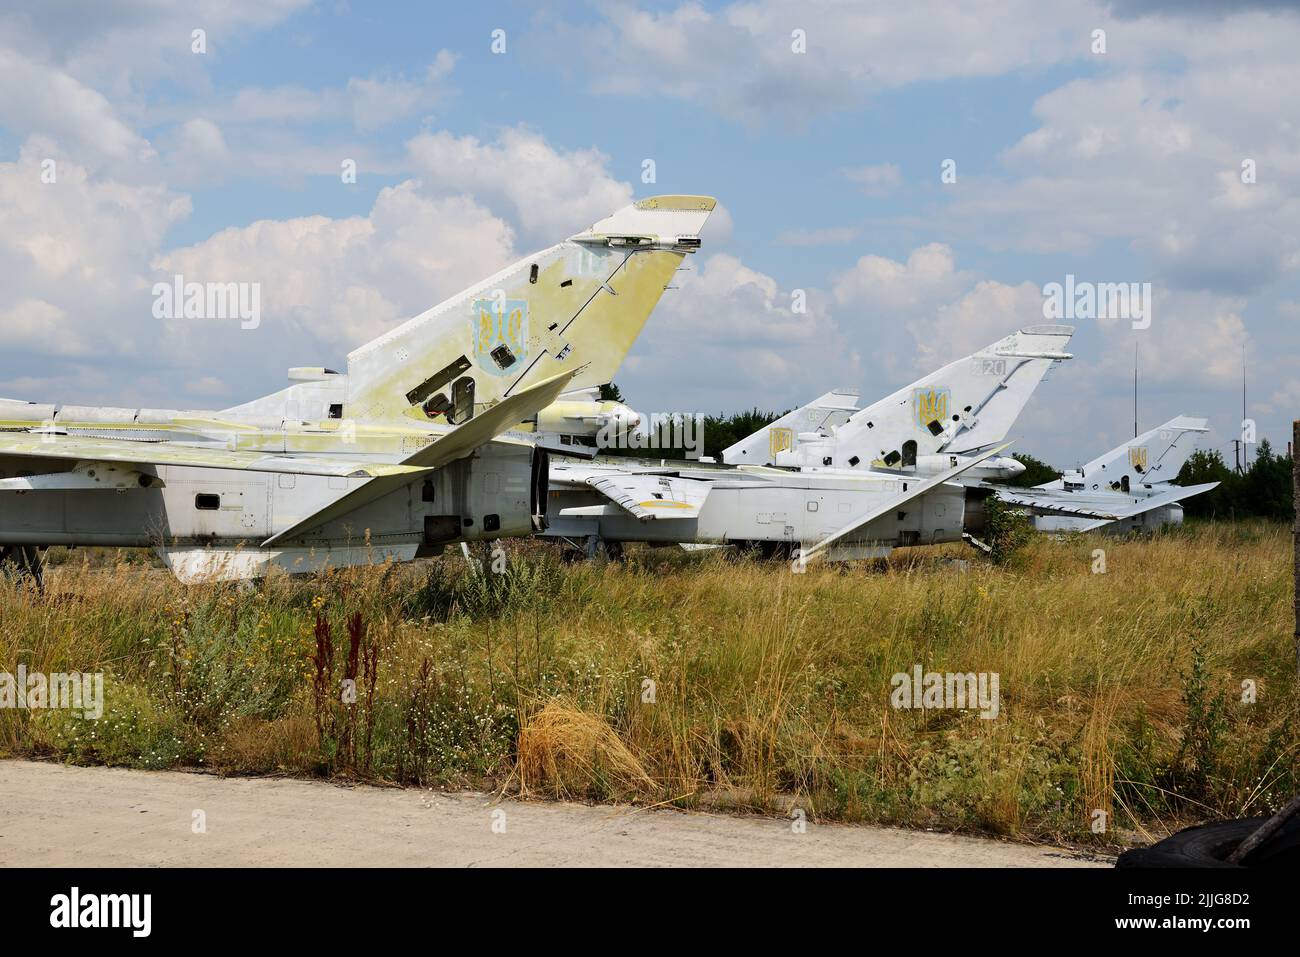 BILA TSERKVA, UCRANIA - 25 DE AGOSTO: La vista sobre los aviones ucranianos Sukhoi Su-24 de ataque supersónico todo-tiempo el 25 de agosto de 2021 en Bila Foto de stock